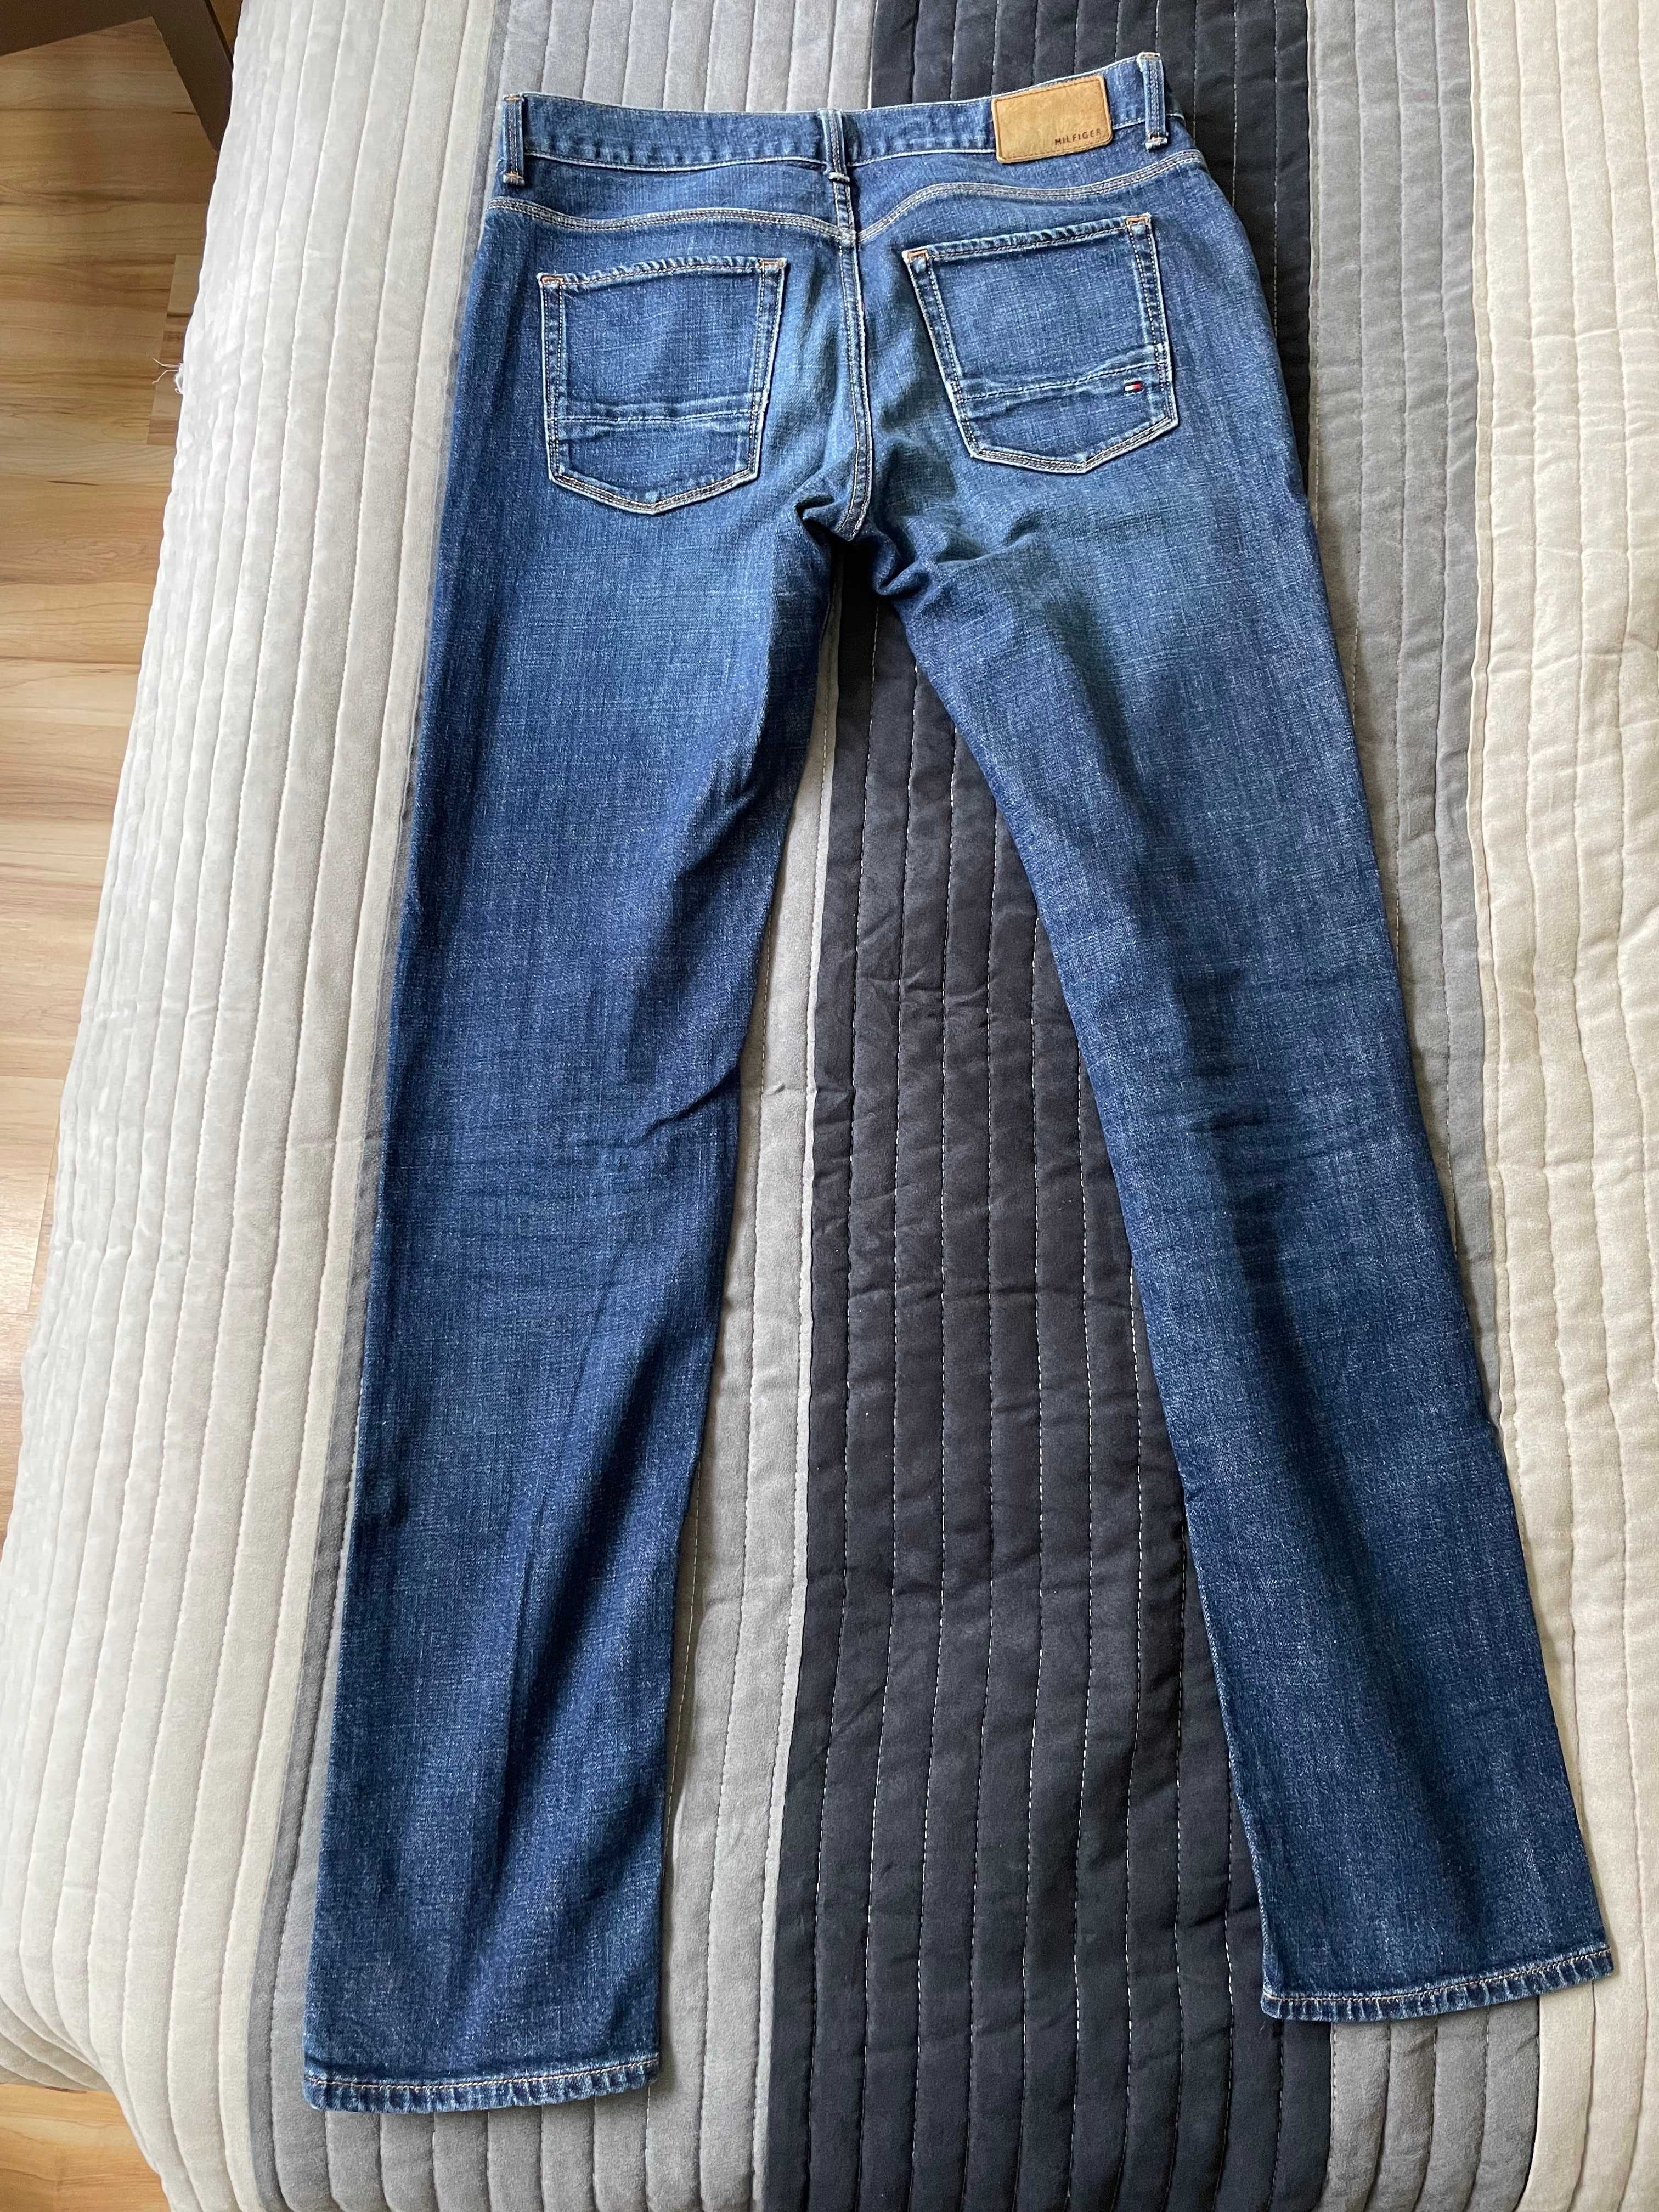 Sprzedam tanio jeansy Tommy Hilfiger -możliwy odbiór osobisty Sopot